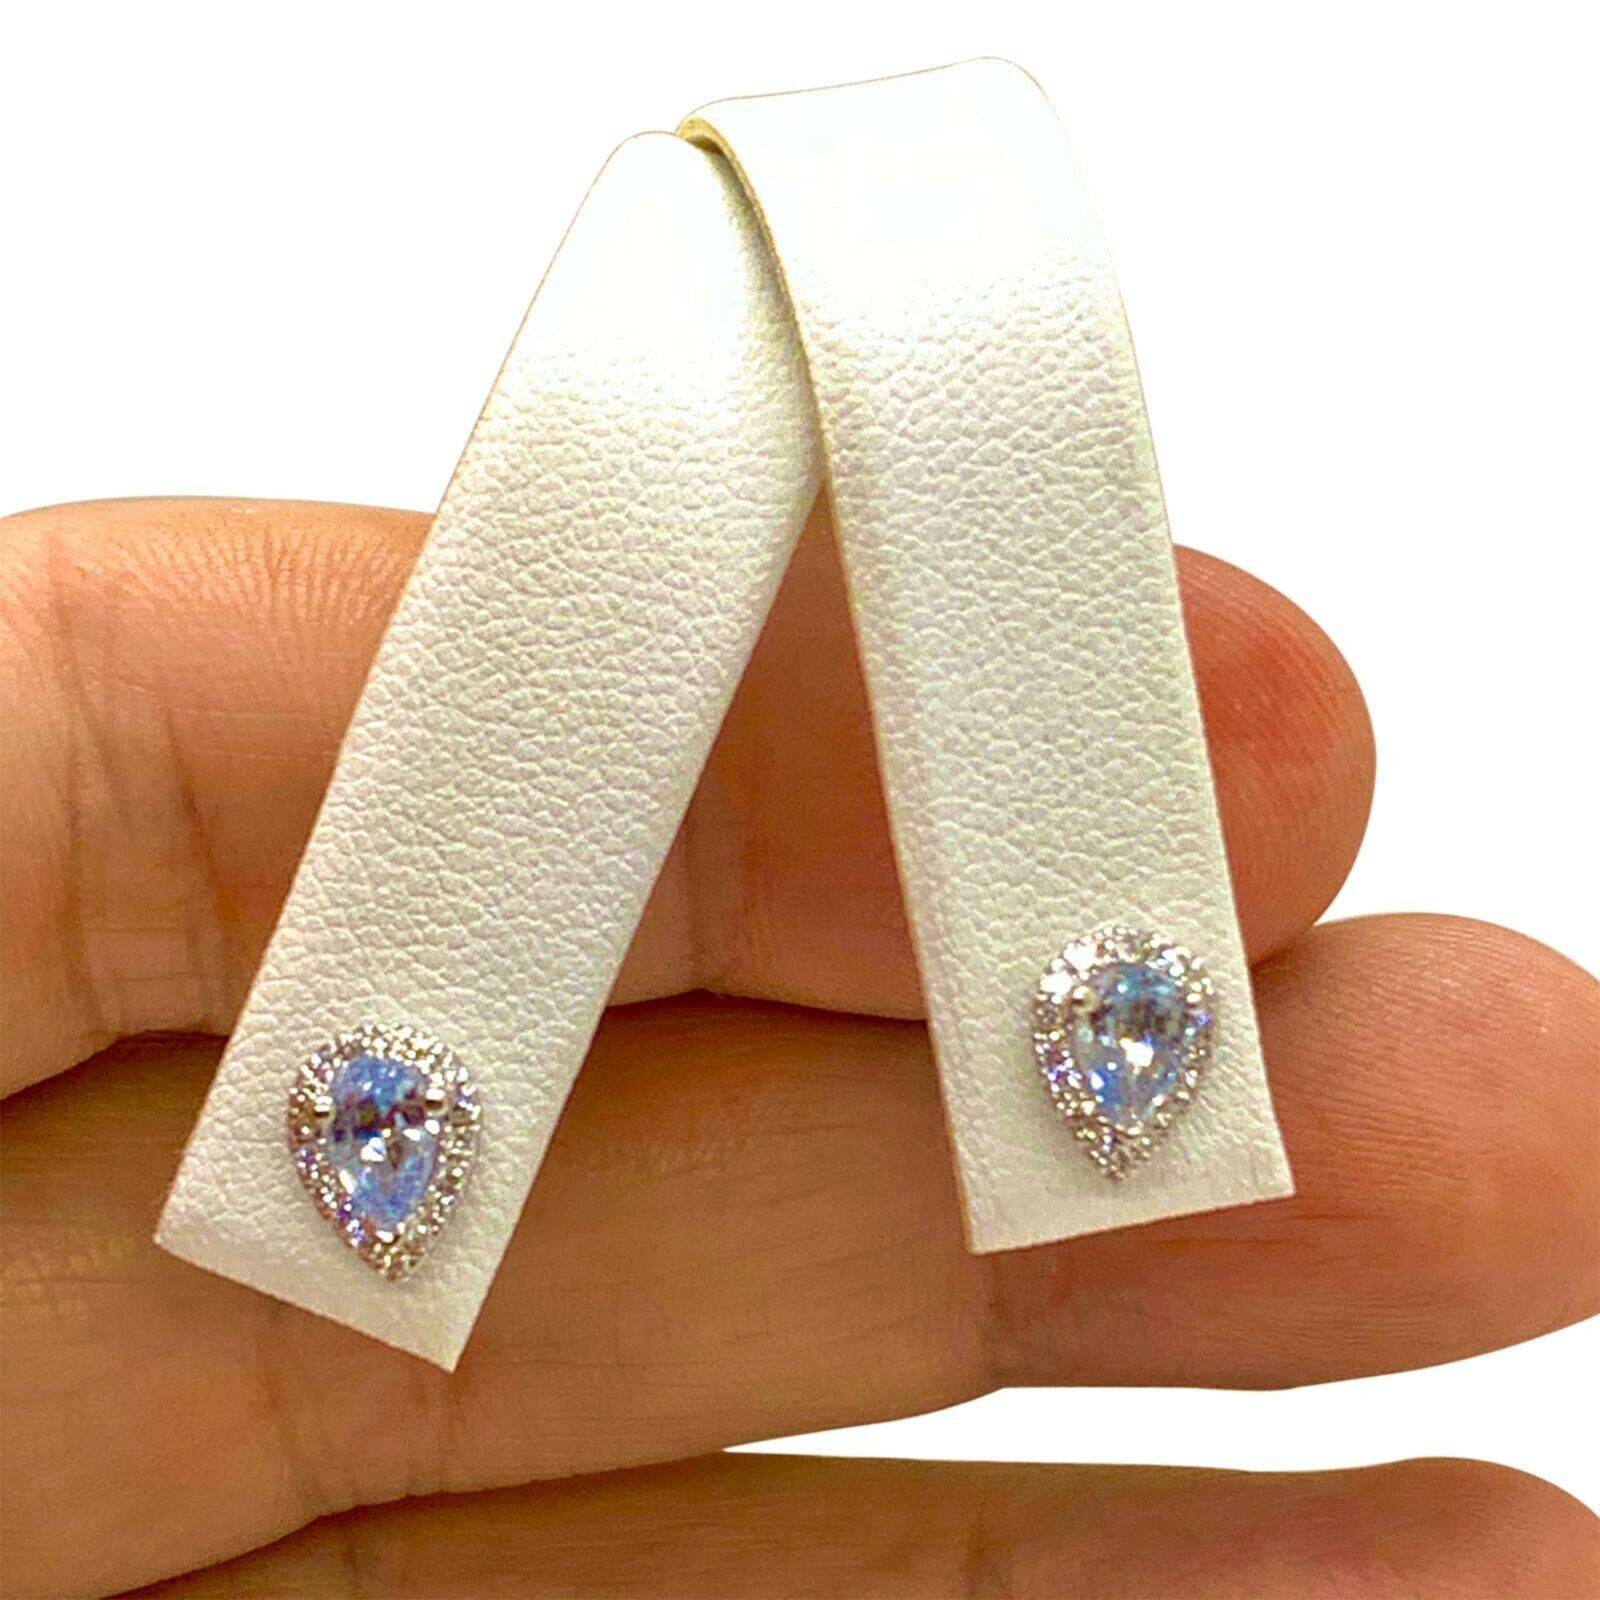 Diamond Blue Sapphire Earrings 18k Gold Certified $2,295 921740 - Certified Fine Jewelry